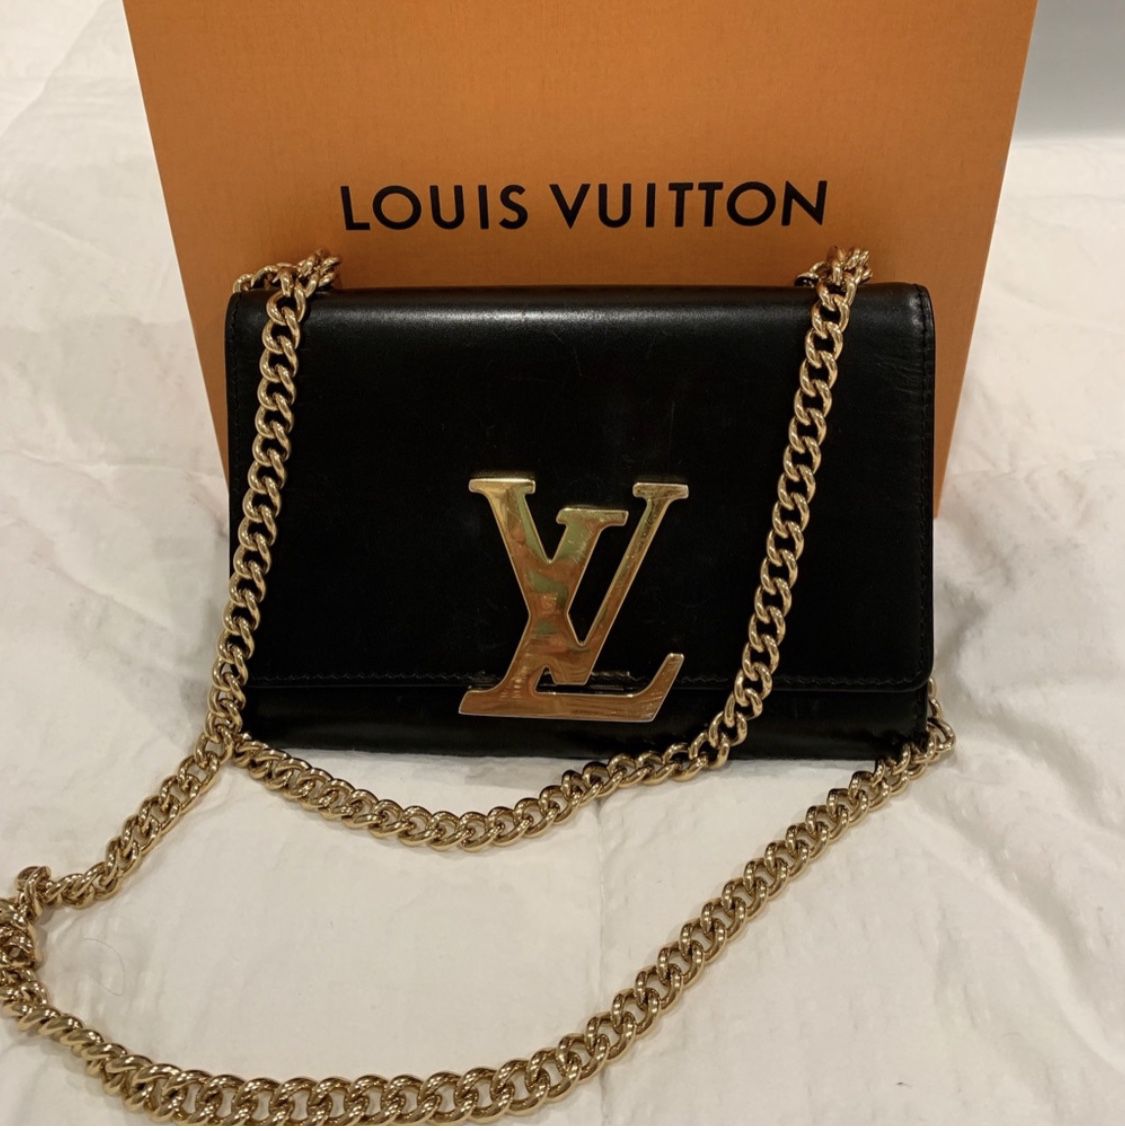 LOUIS VUITTON Patent Louise MM Chain Bag - Black/Gold